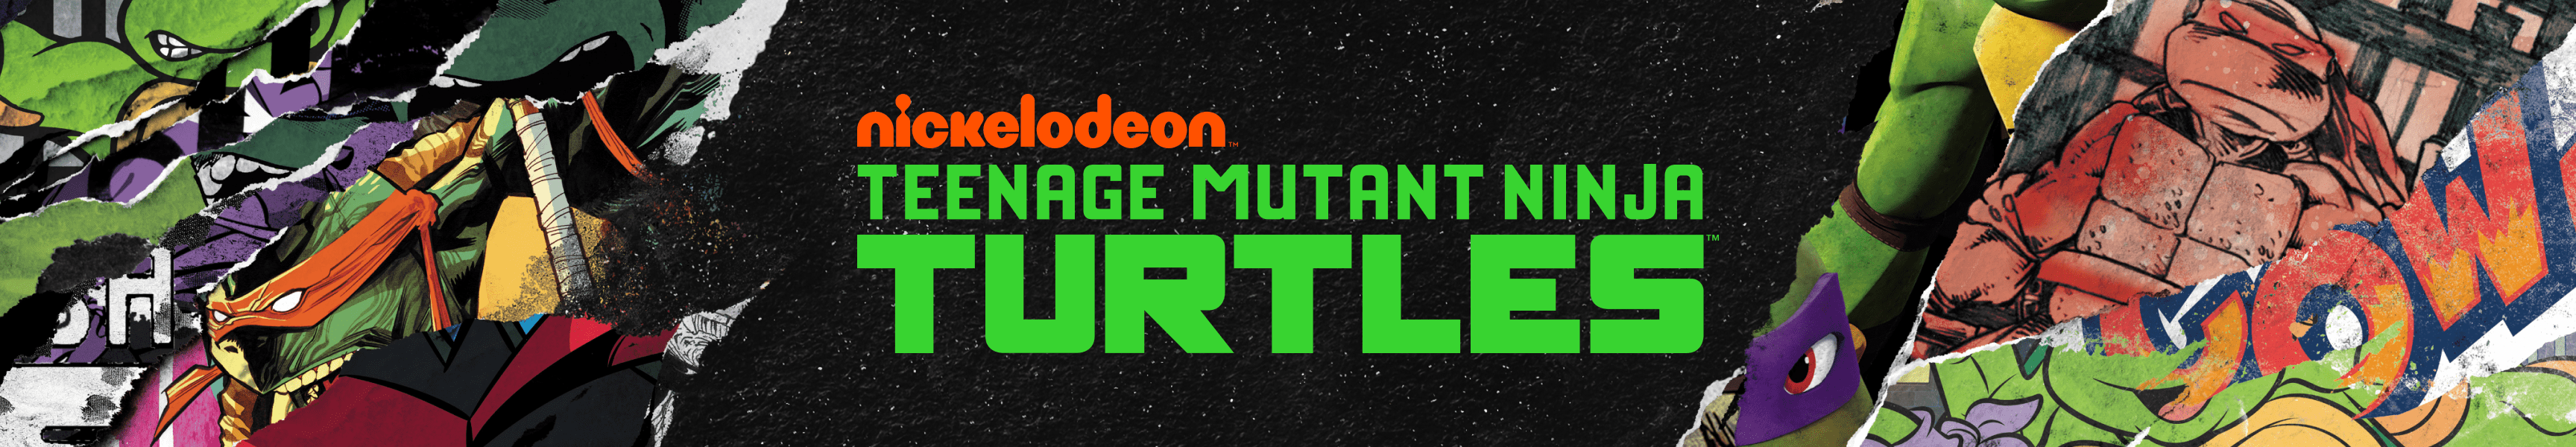 Teenage Mutant Ninja Turtles Decken